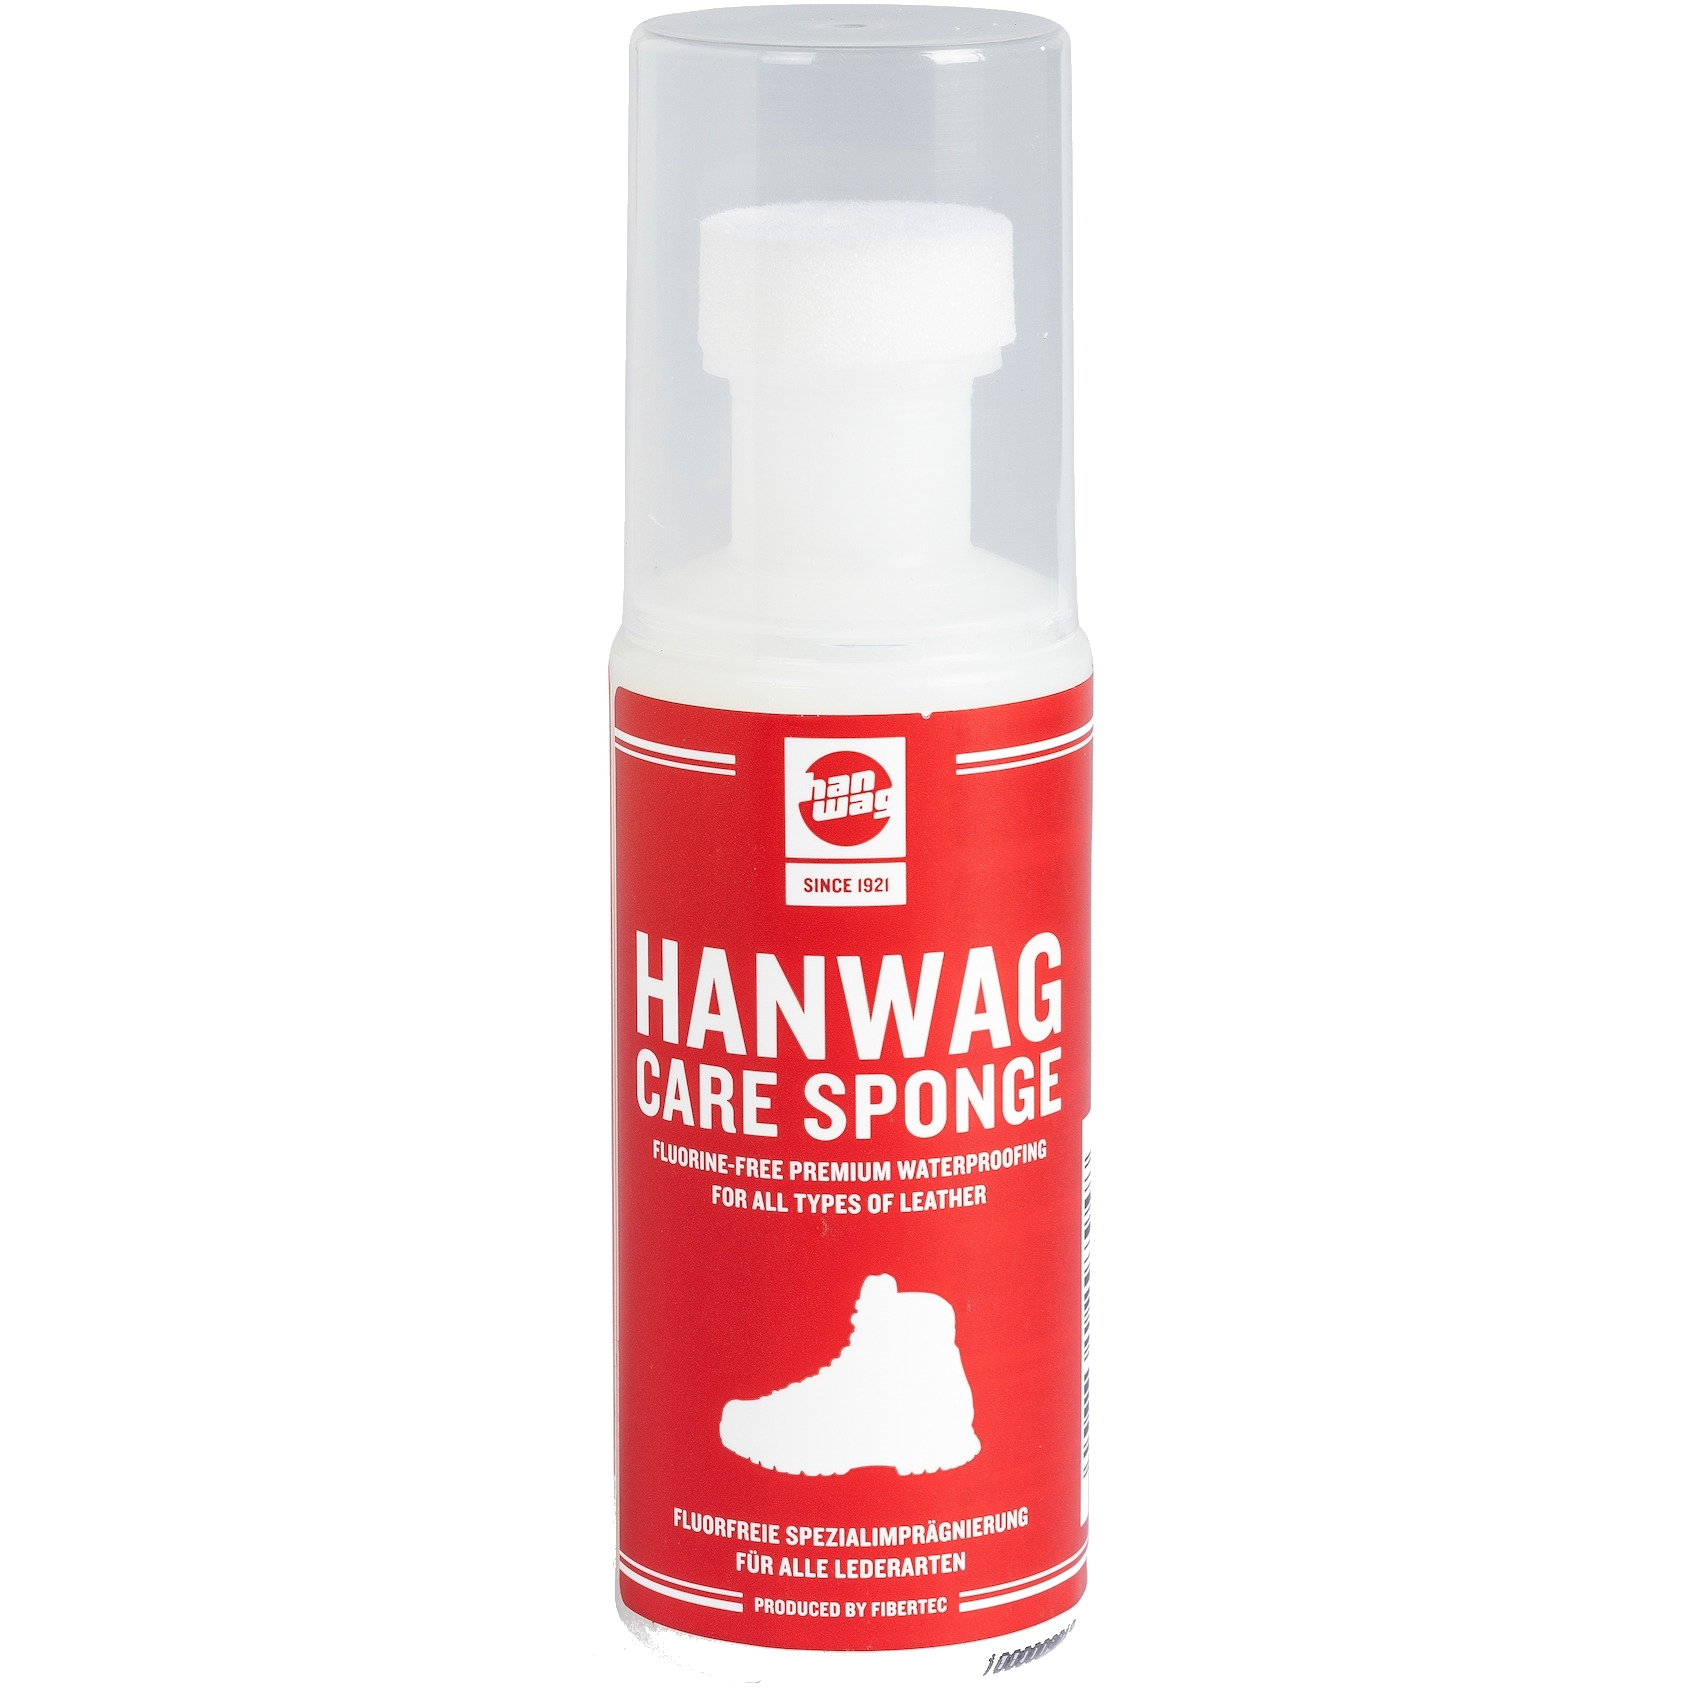 Produktbild von Hanwag Care Sponge Imprägnier- und Lederpflegemittel 100ml